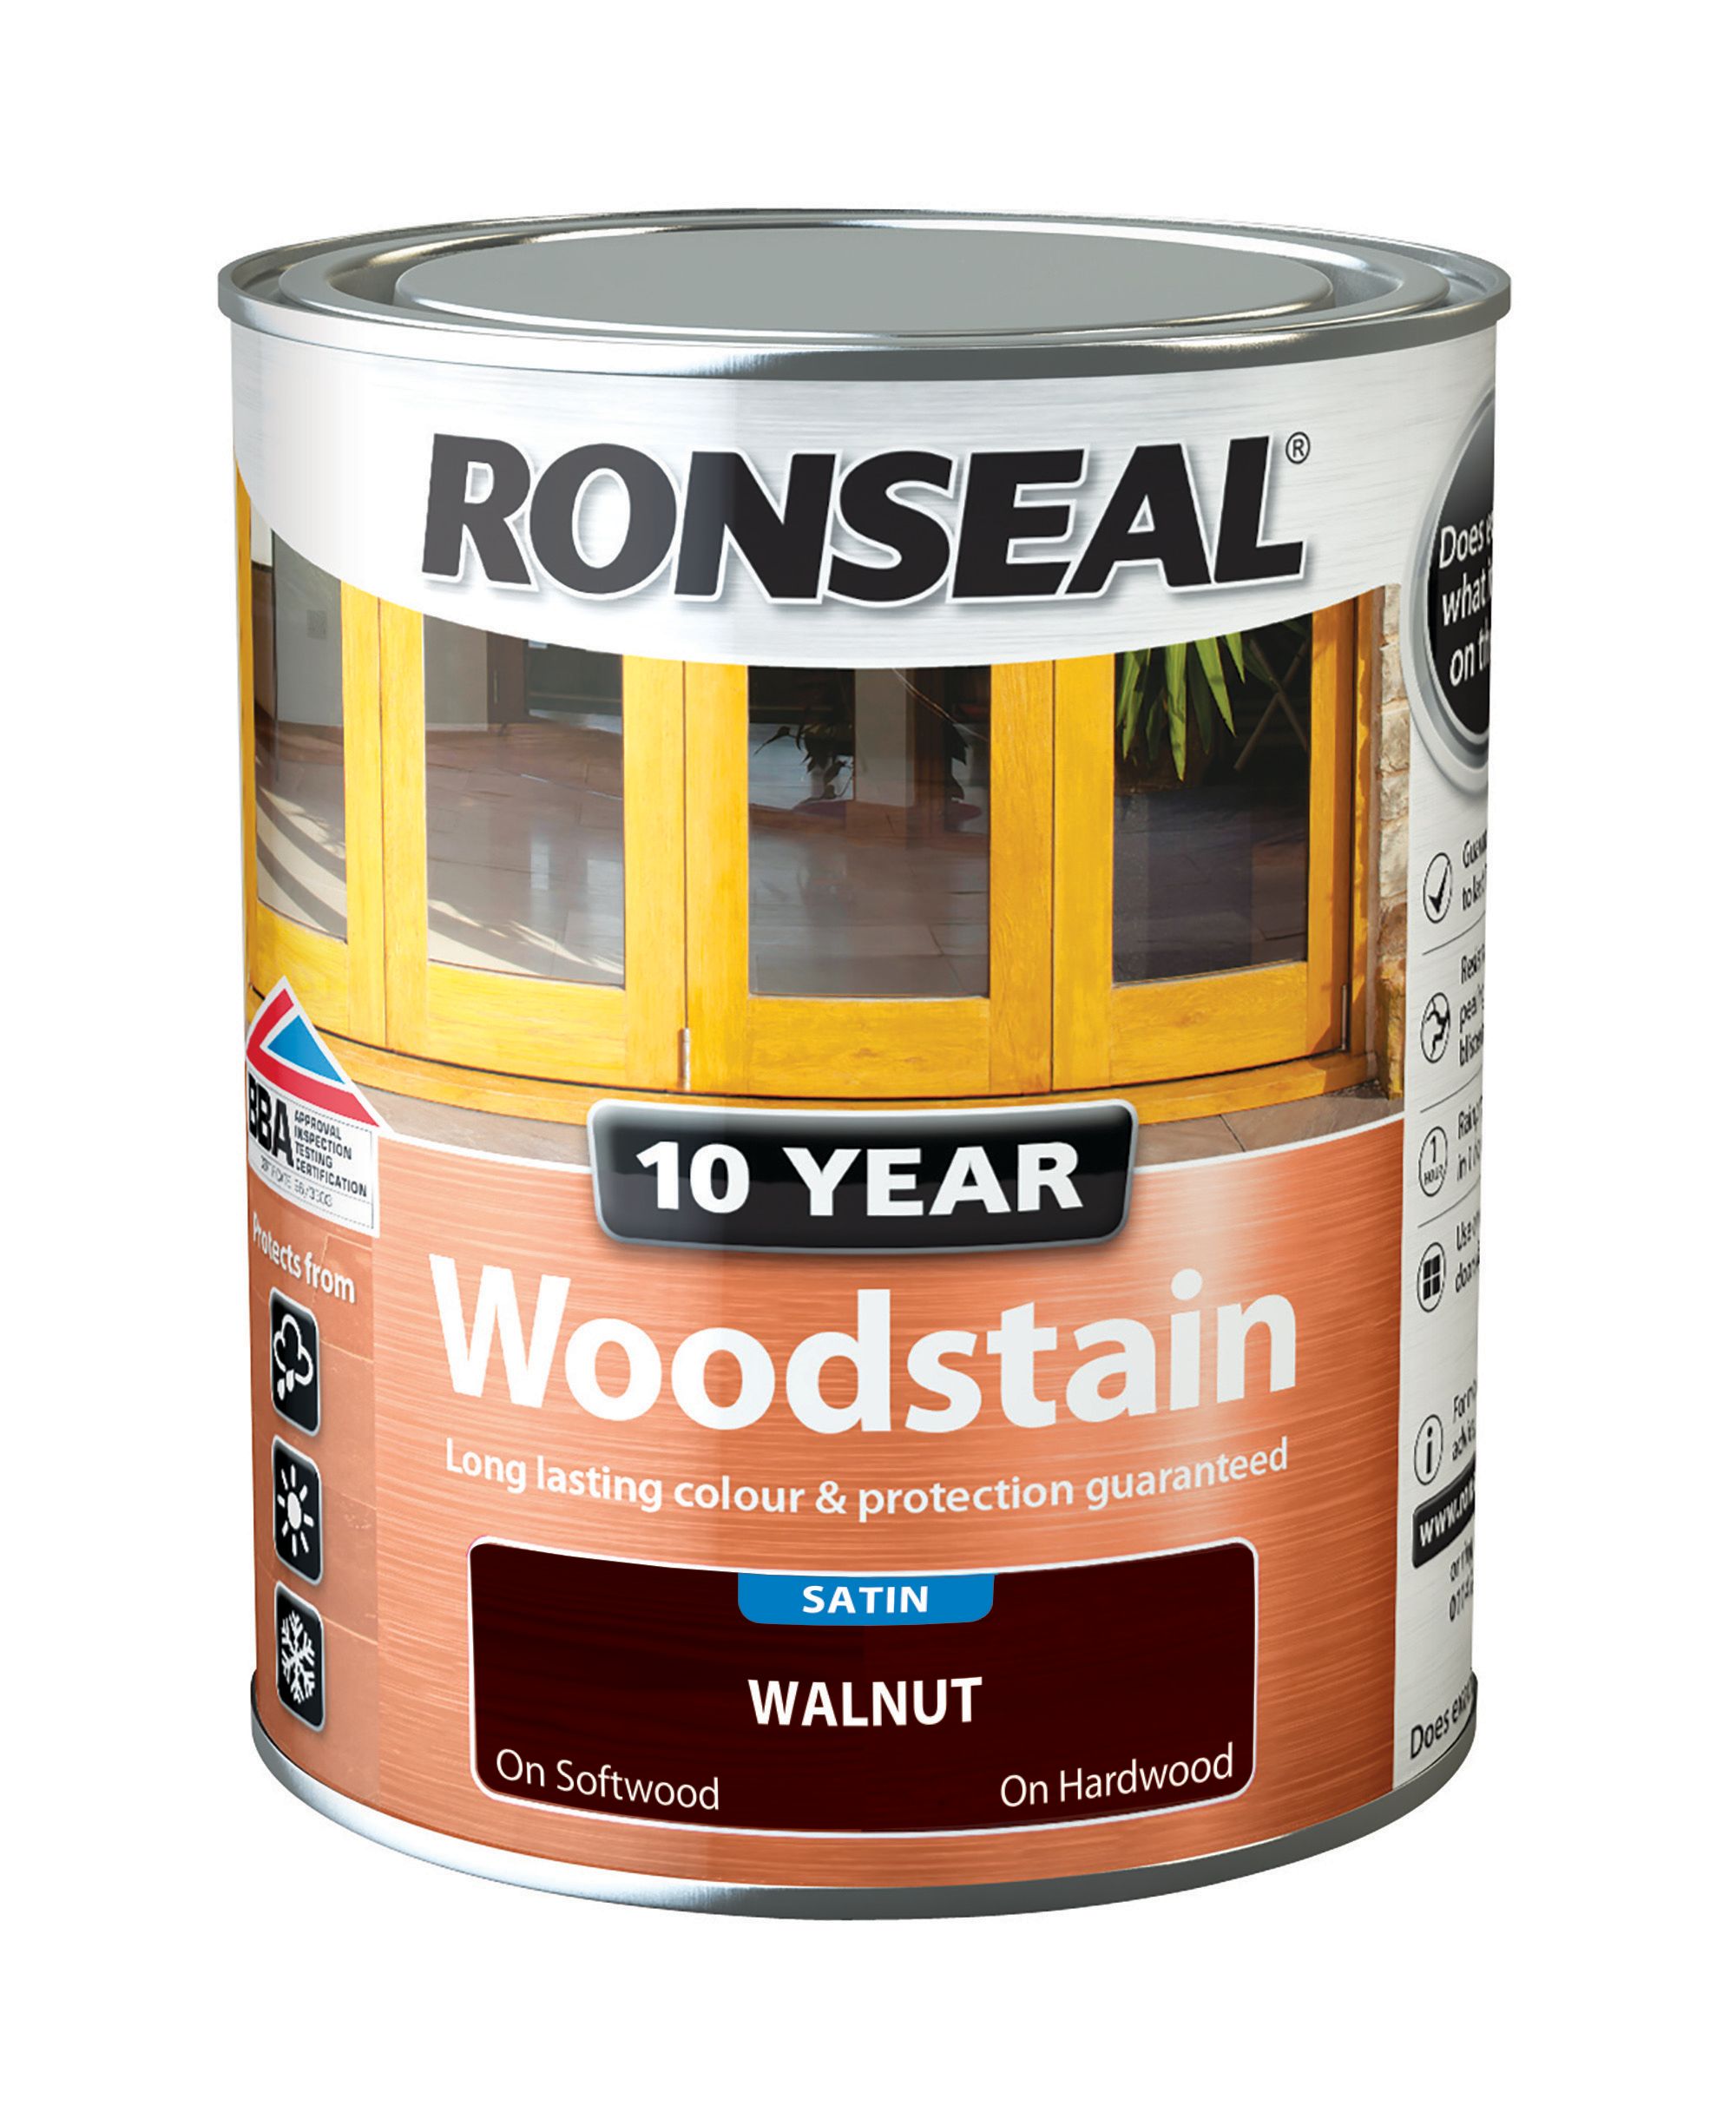 Ronseal 10 Year Woodstain - Walnut - 750ml